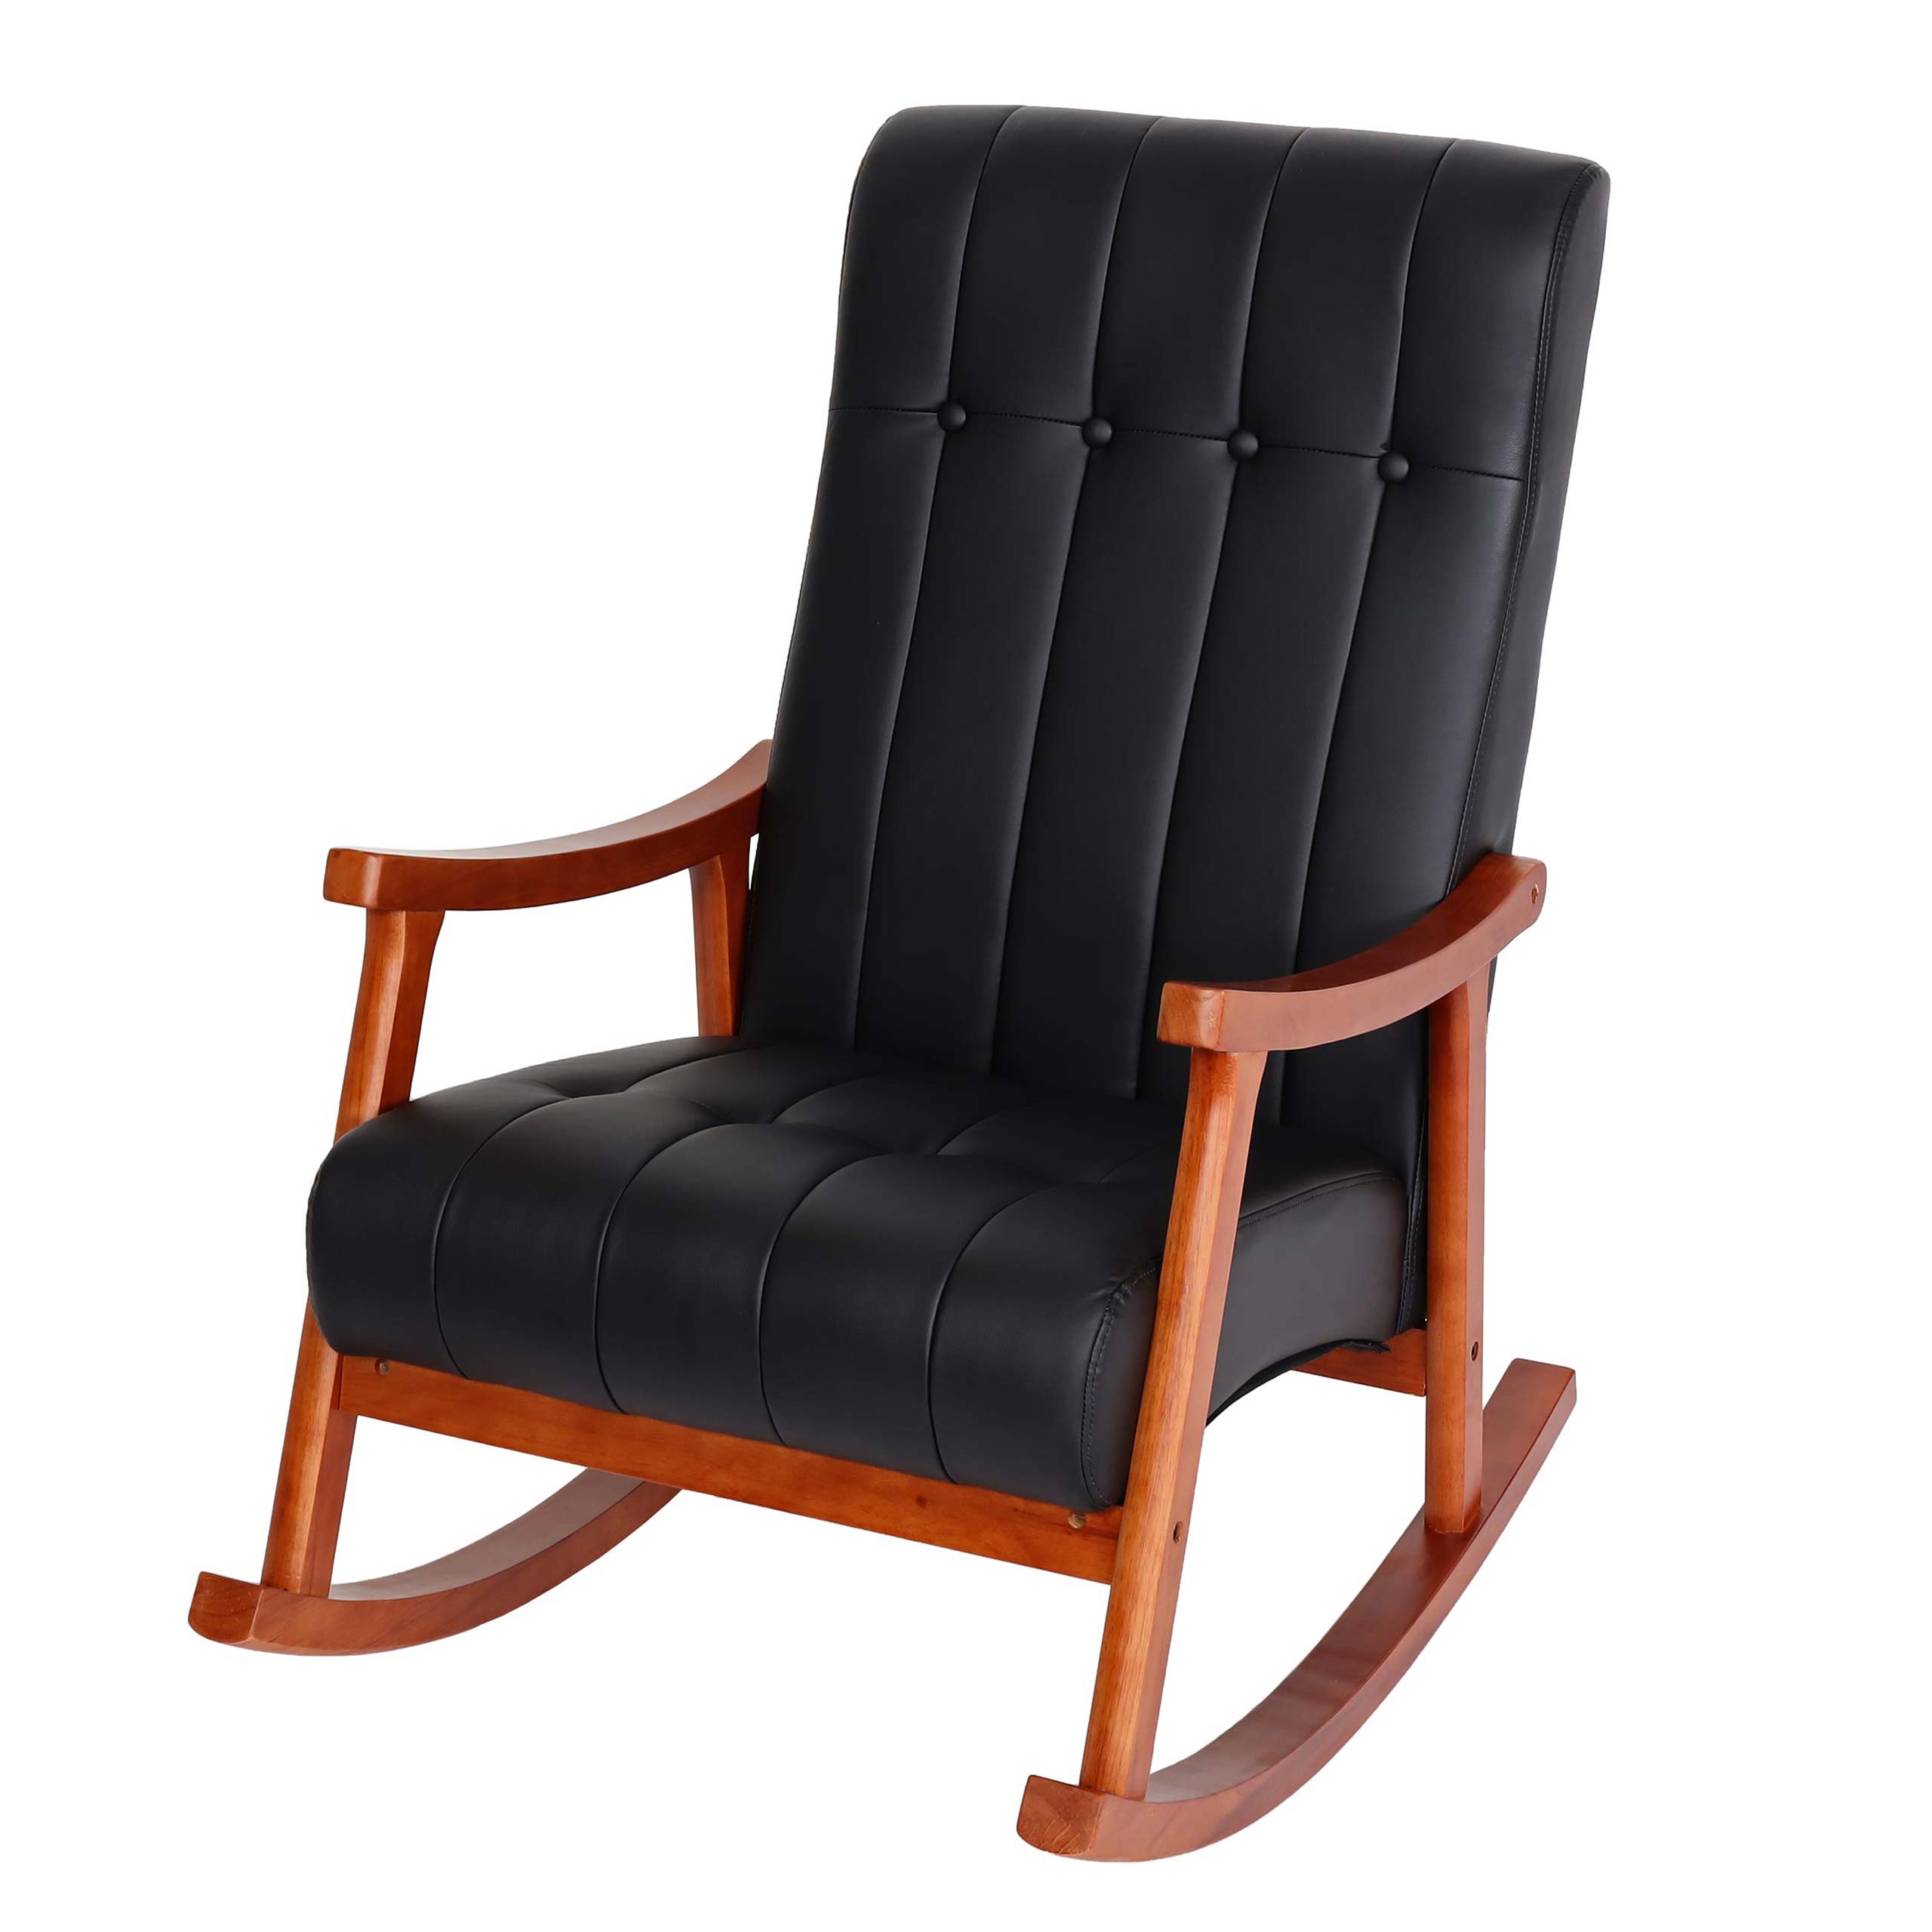 Sedia dondolo nordica elegante HWC-K10 97x62x82cm legno versione a scelta |  eBay